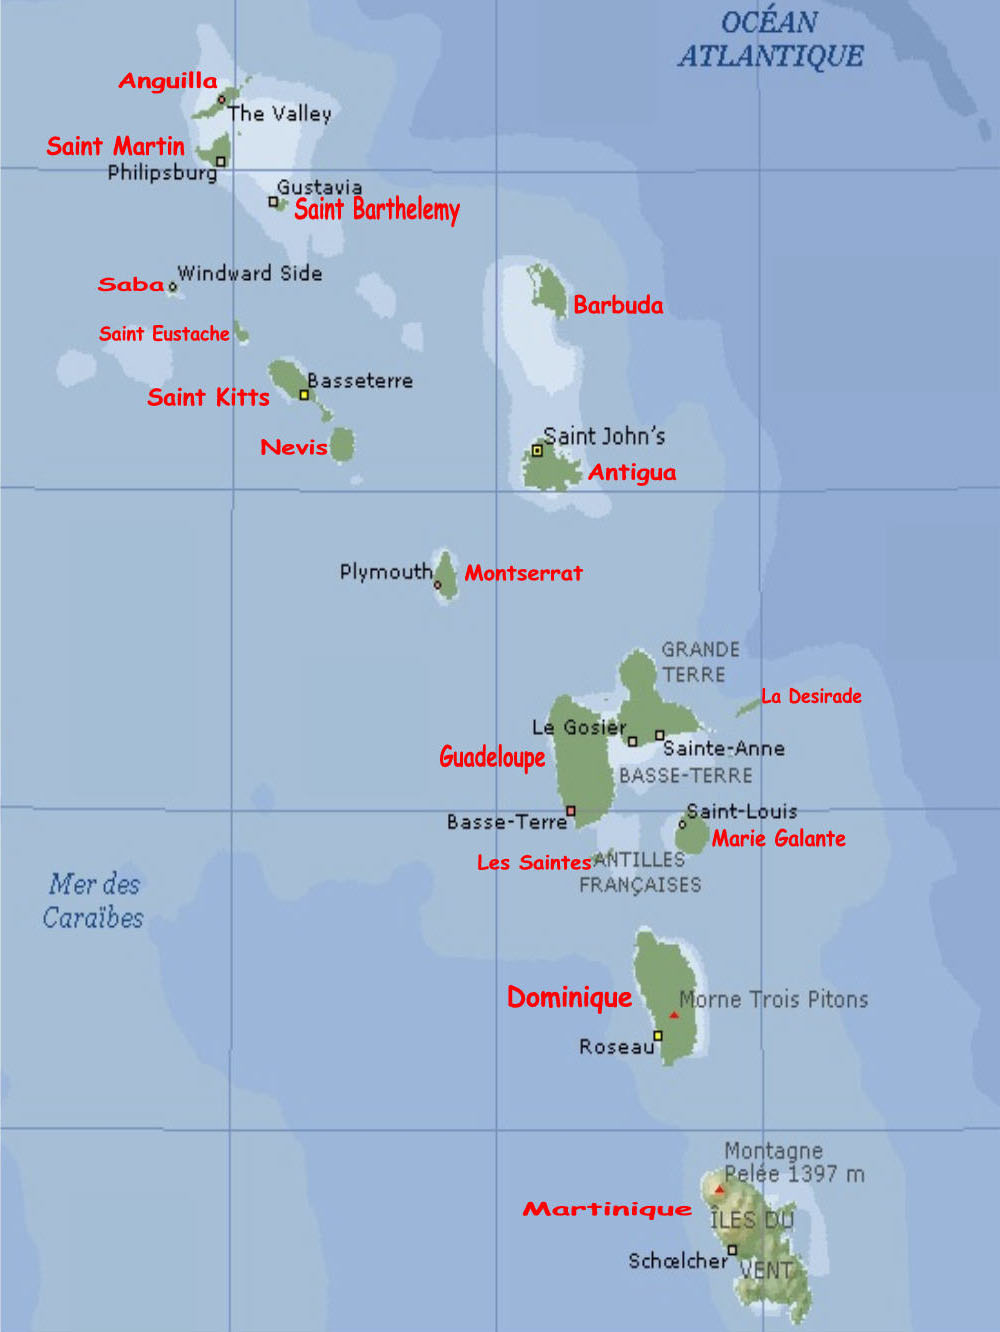 Les Antilles 